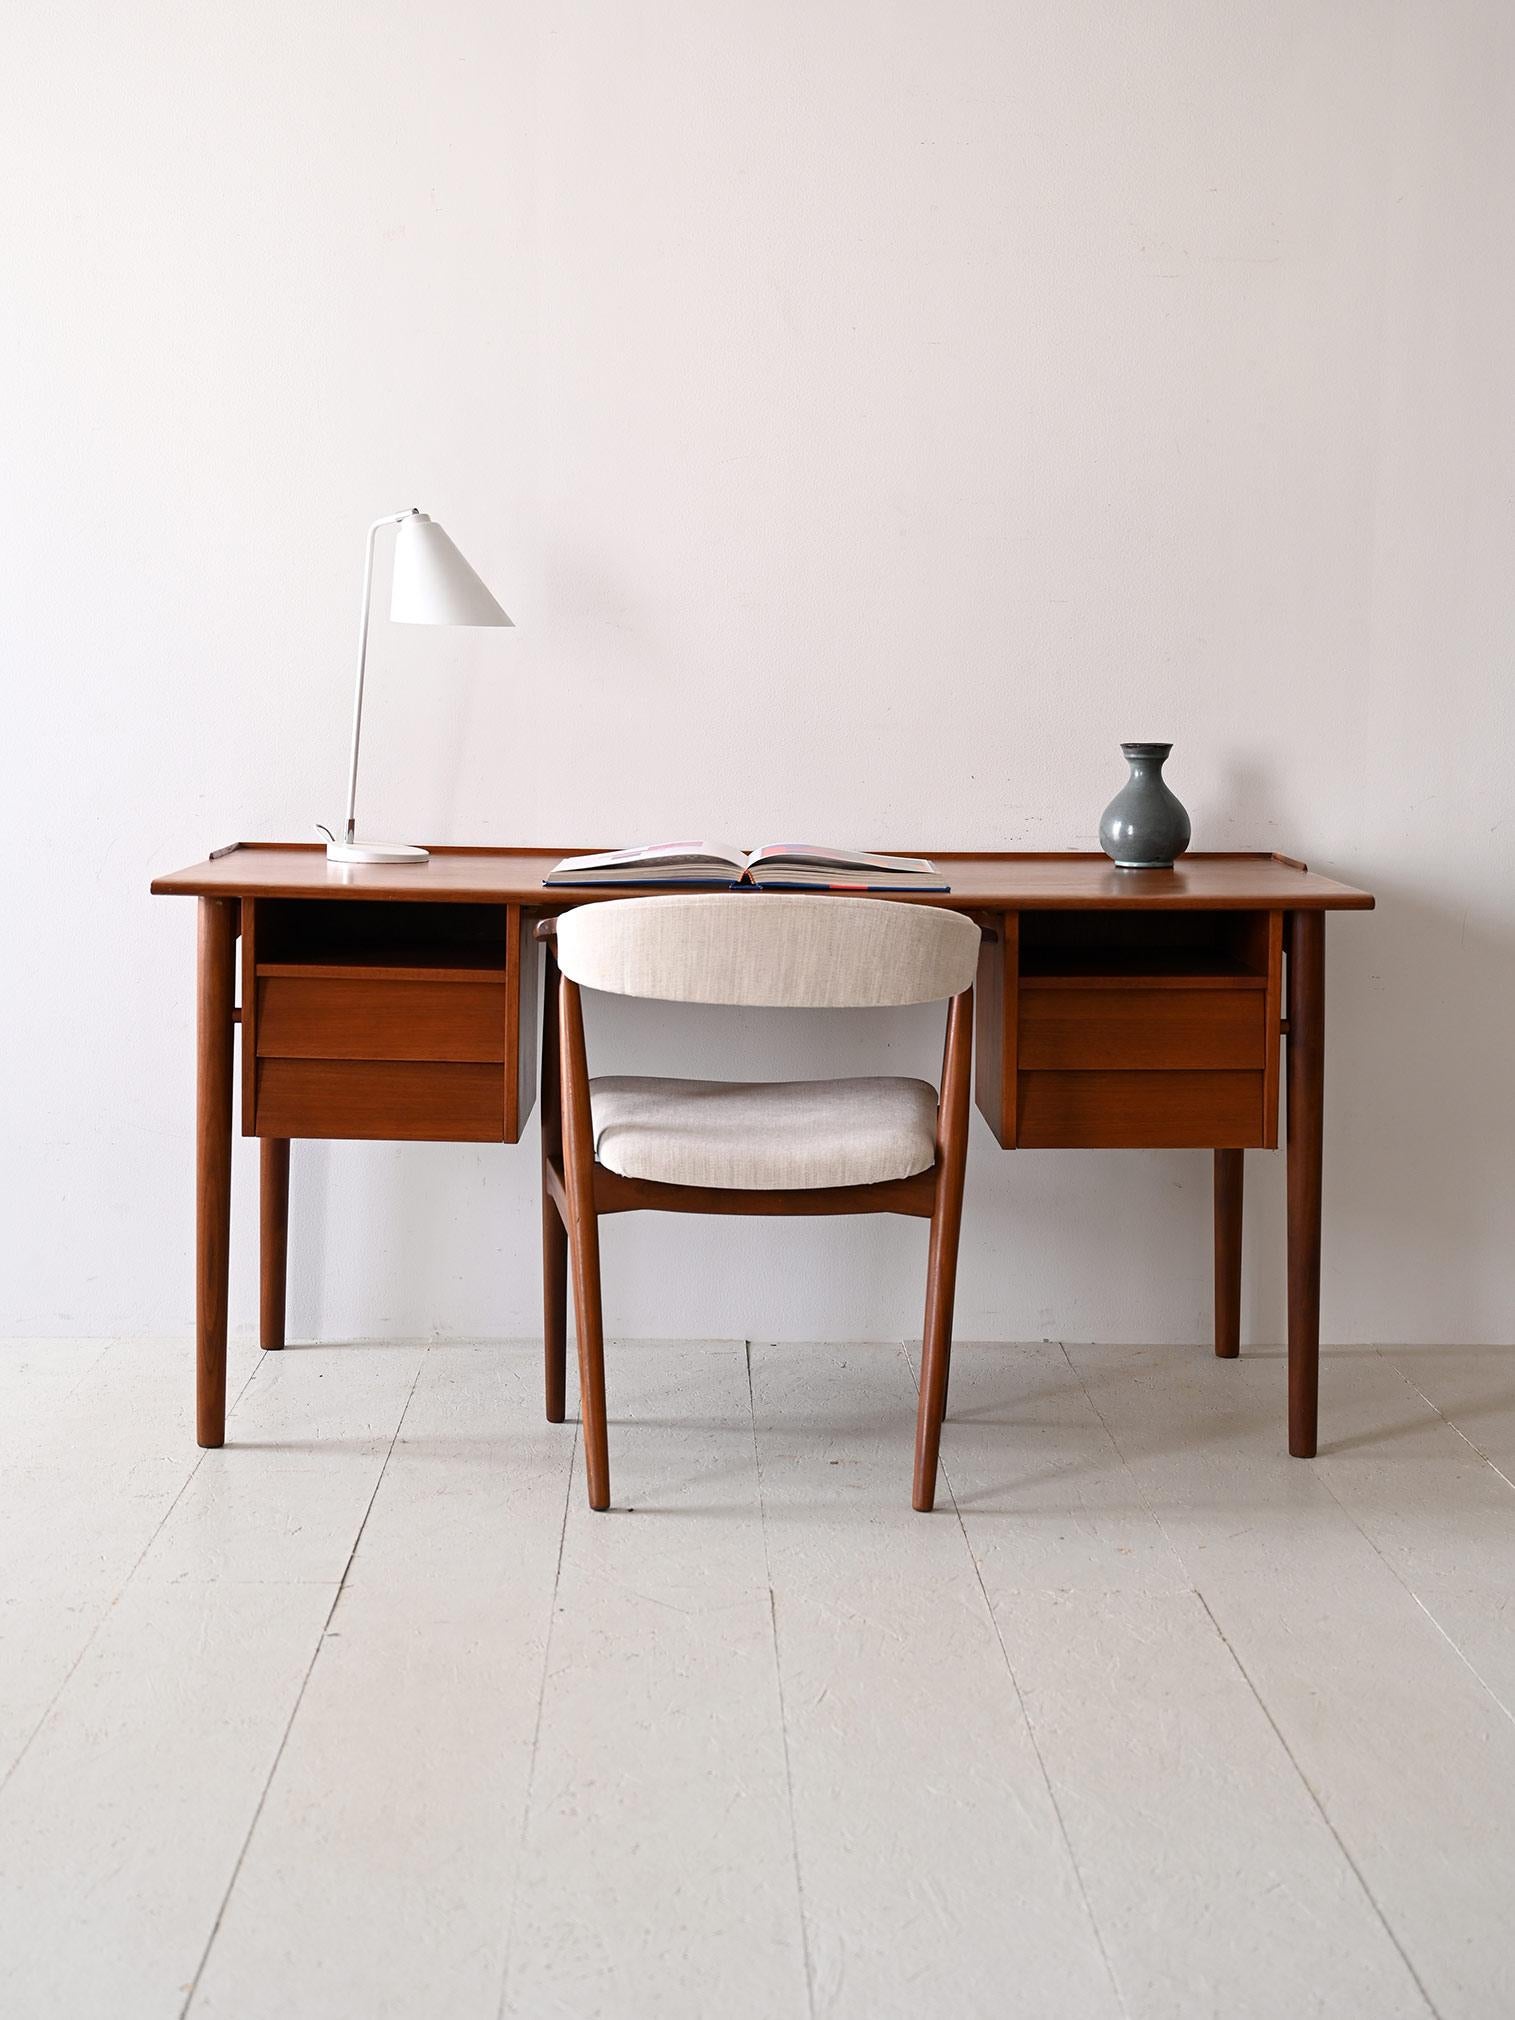 Vintage-Bürotisch aus Teakholz.

Dieser skandinavische Schreibtisch aus den 1960er Jahren ist mit seinem klaren Design und seinen feinen Linien ein Beispiel für Funktionalität und Eleganz. 
Es besteht aus einer großen Arbeitsplatte, die von runden,